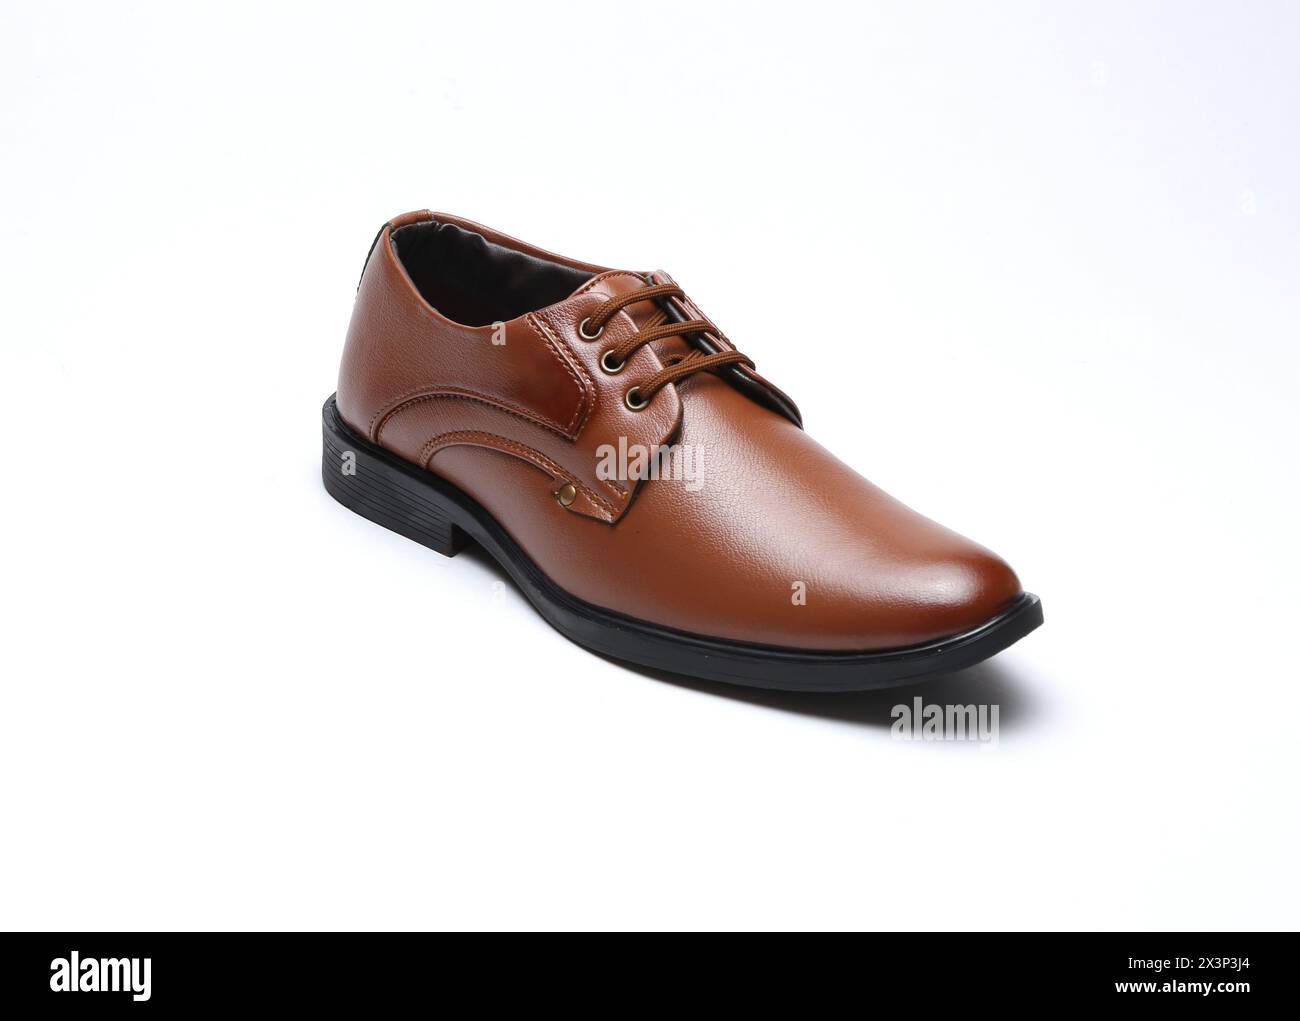 scarpe formali in pelle tan isolate su sfondo bianco Foto Stock